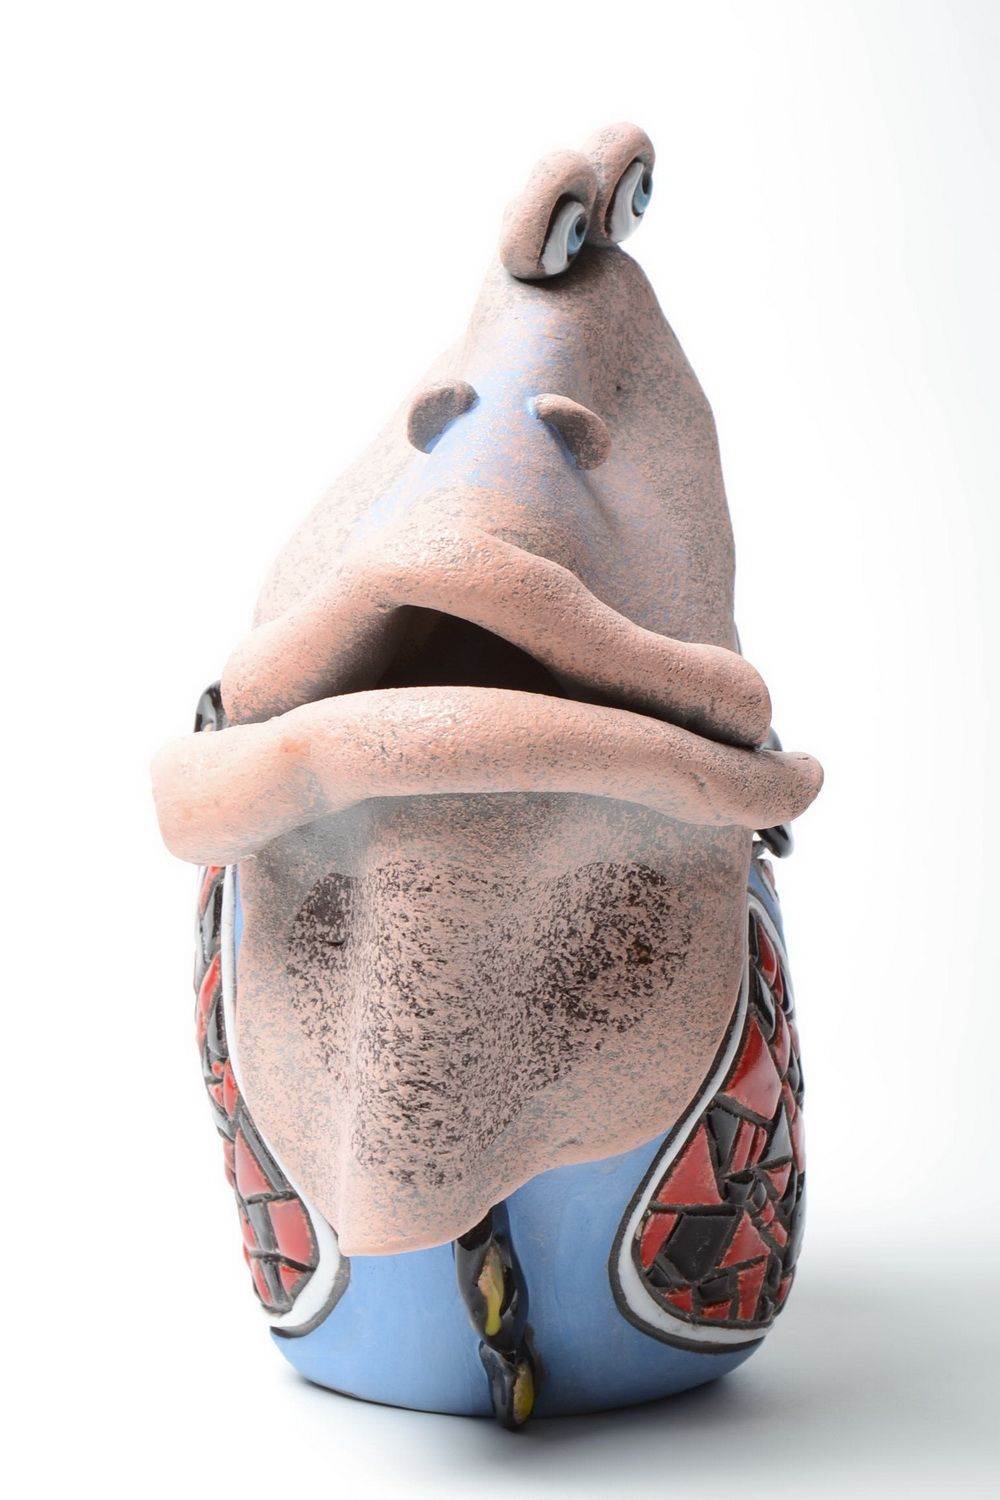 Originelle Vase handmade aus Ton in Form vom Fisch mit Pigmenten bemalt foto 2